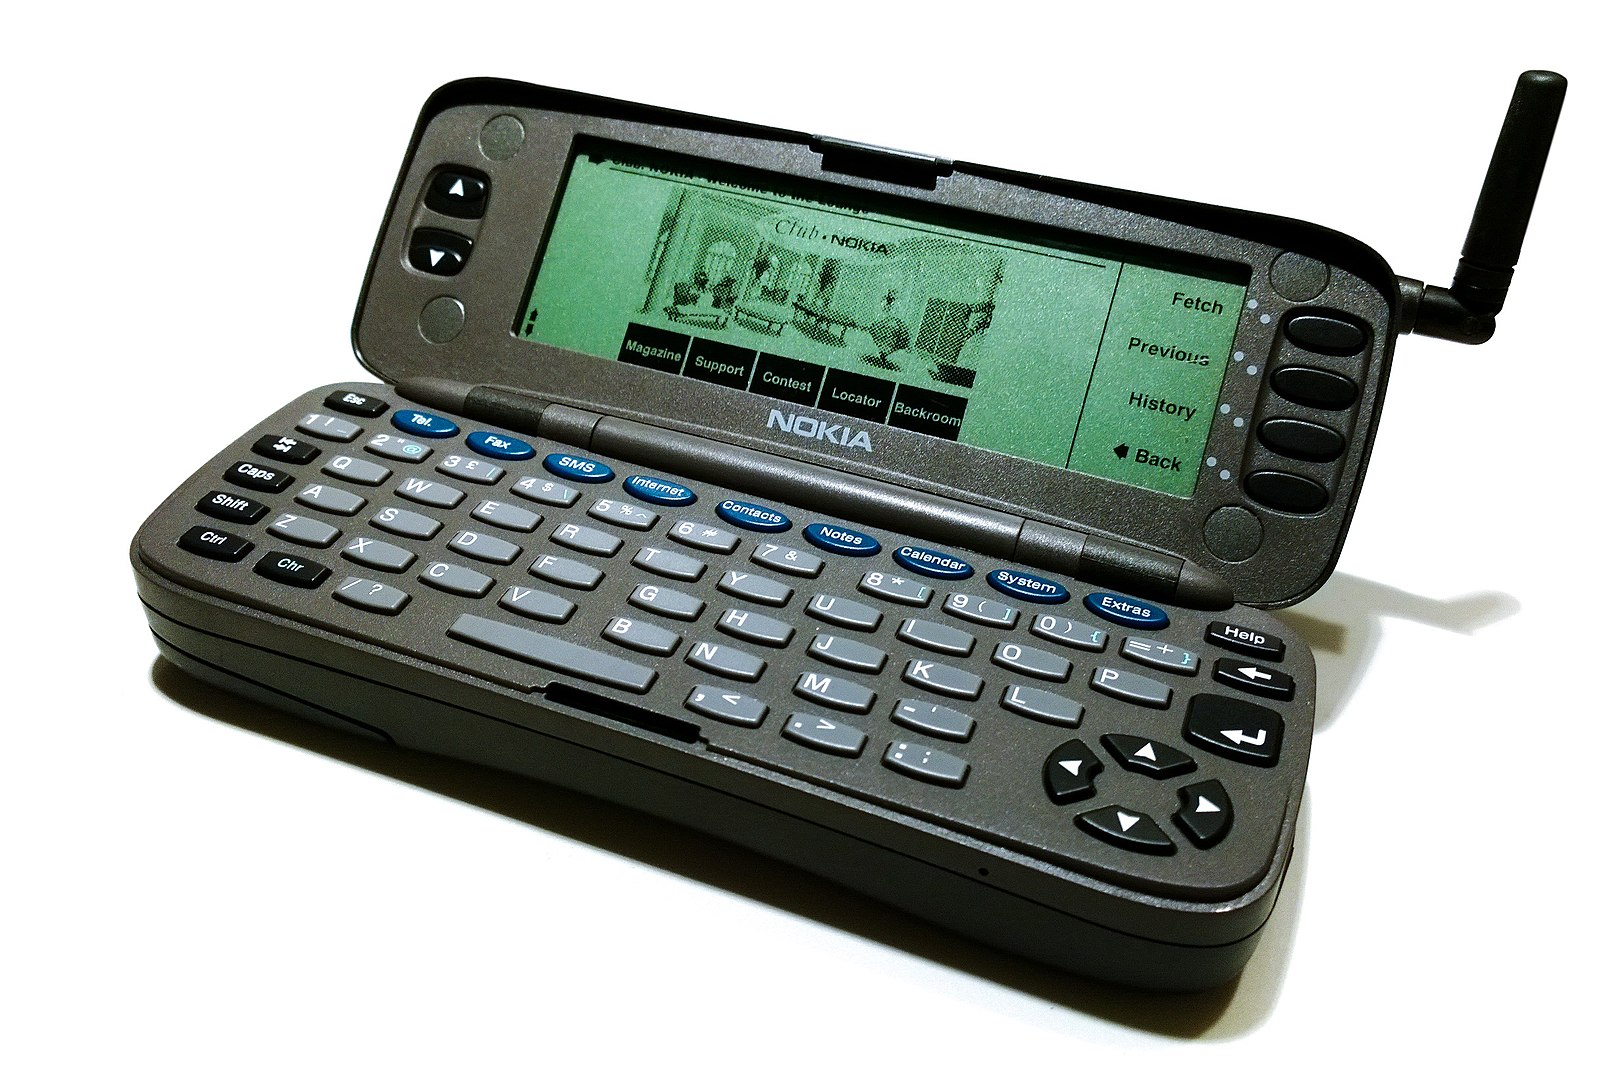 Nokia 9000 Communicator avattuna. Kuva: textlad / Flickr.